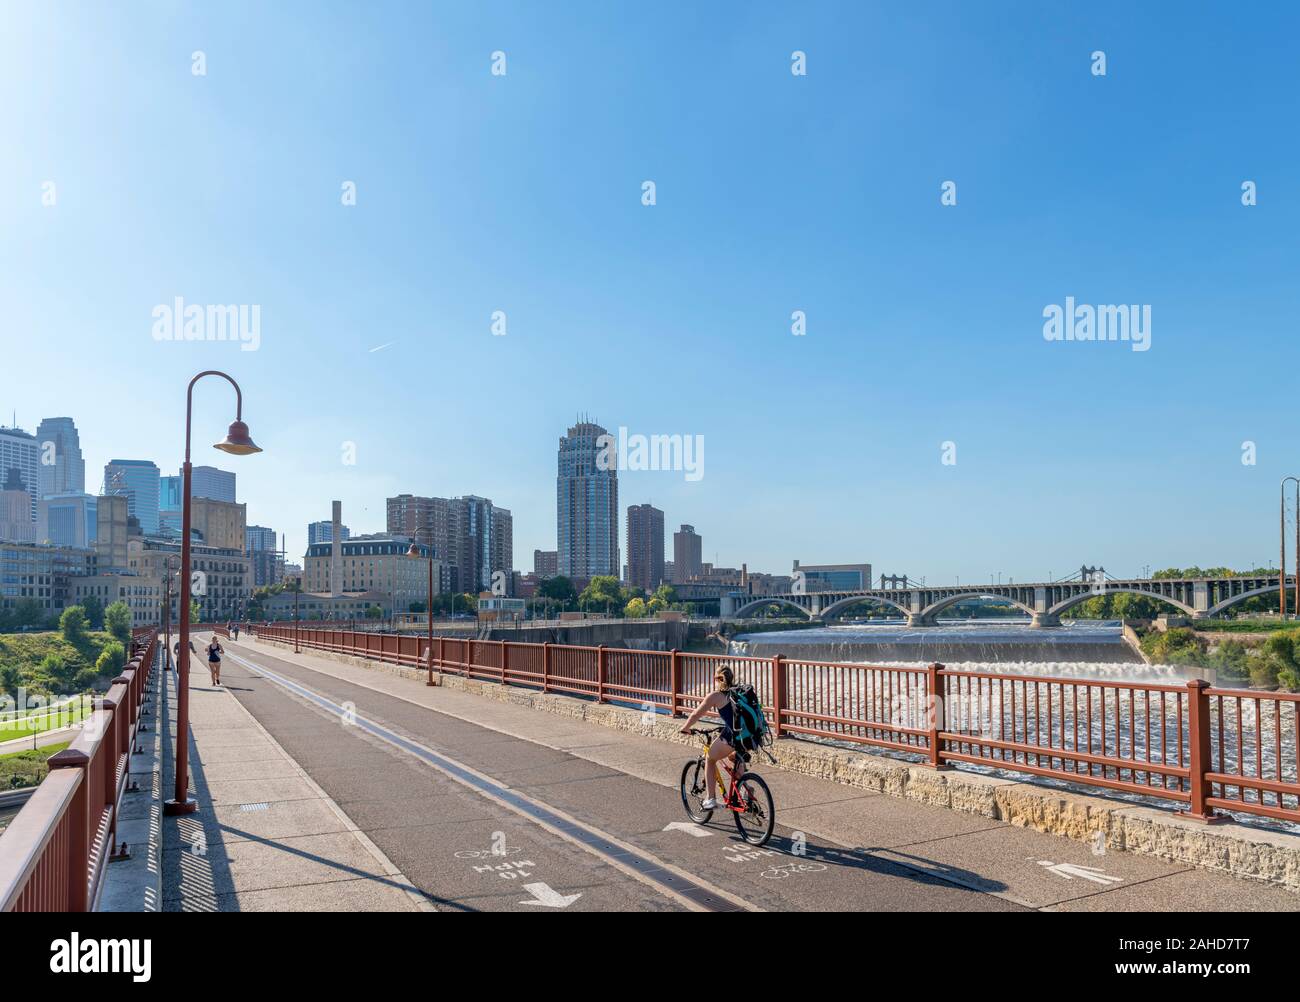 Die Skyline der Innenstadt von der steinernen Bogenbrücke mit St Anthony Falls rechts, Mississippi, Minneapolis, Minnesota, USA Stockfoto